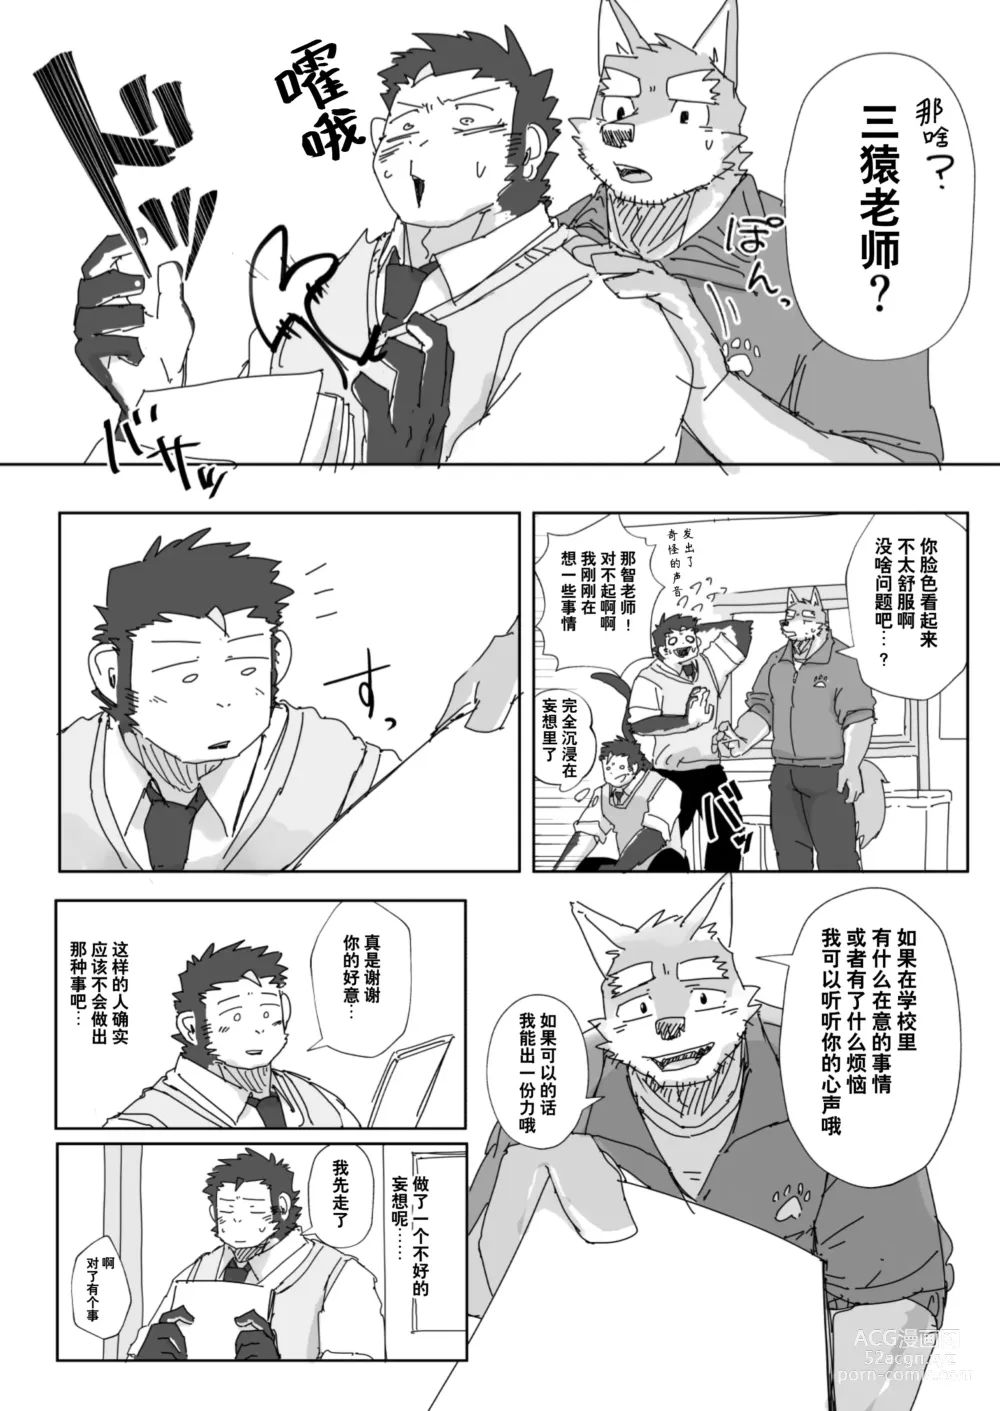 Page 18 of manga 放学后的游戏+后续